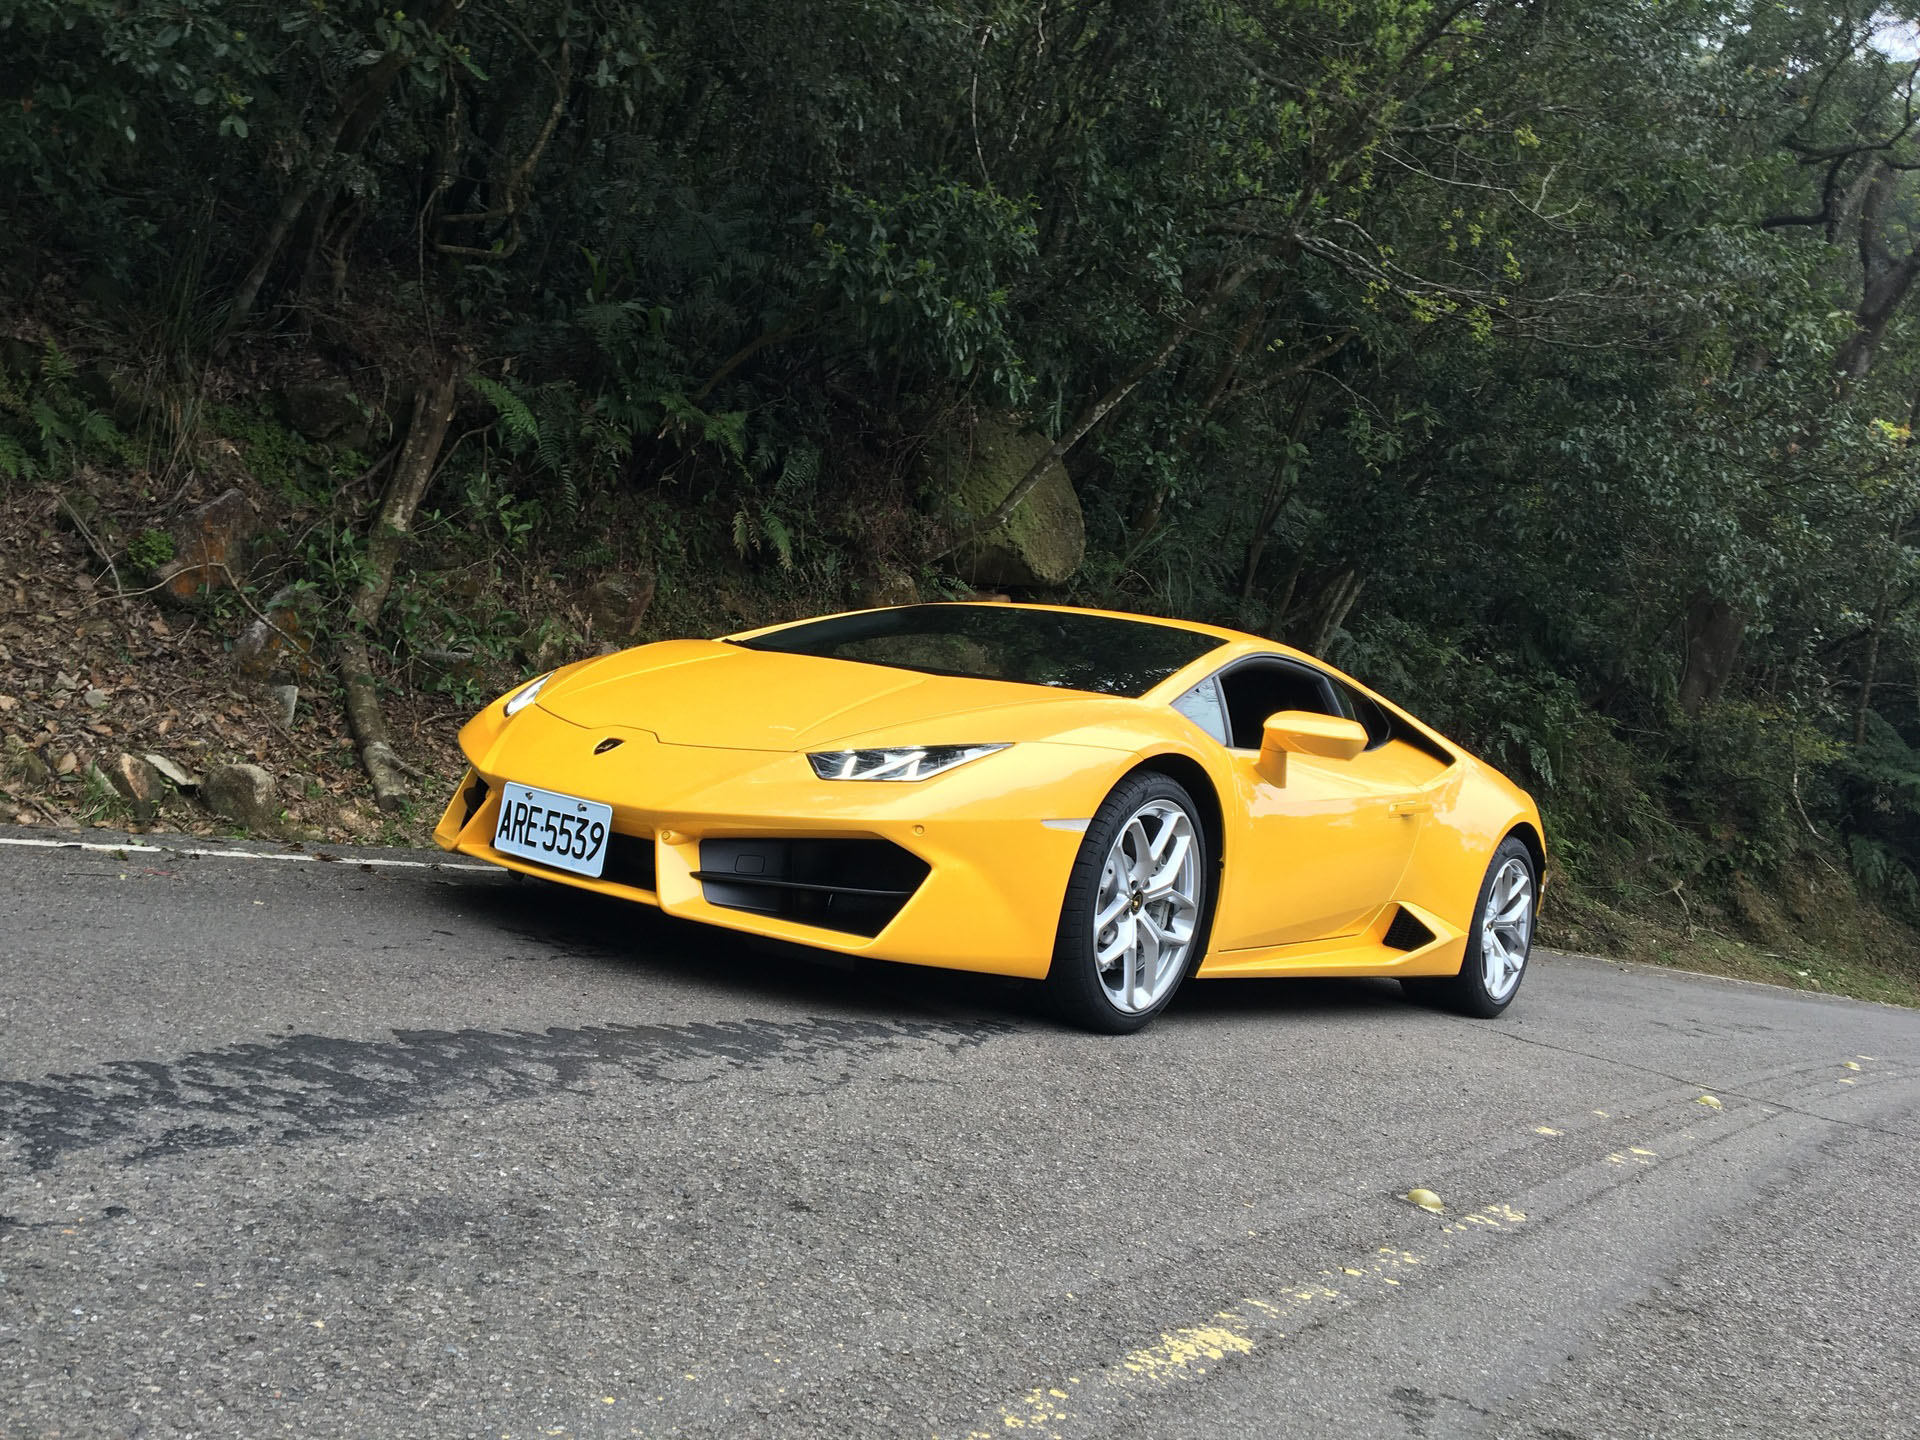 Hình nền siêu xe Lamborghini full HD đẹp nhất - [Kích thước hình ảnh: 1920x1440 px]